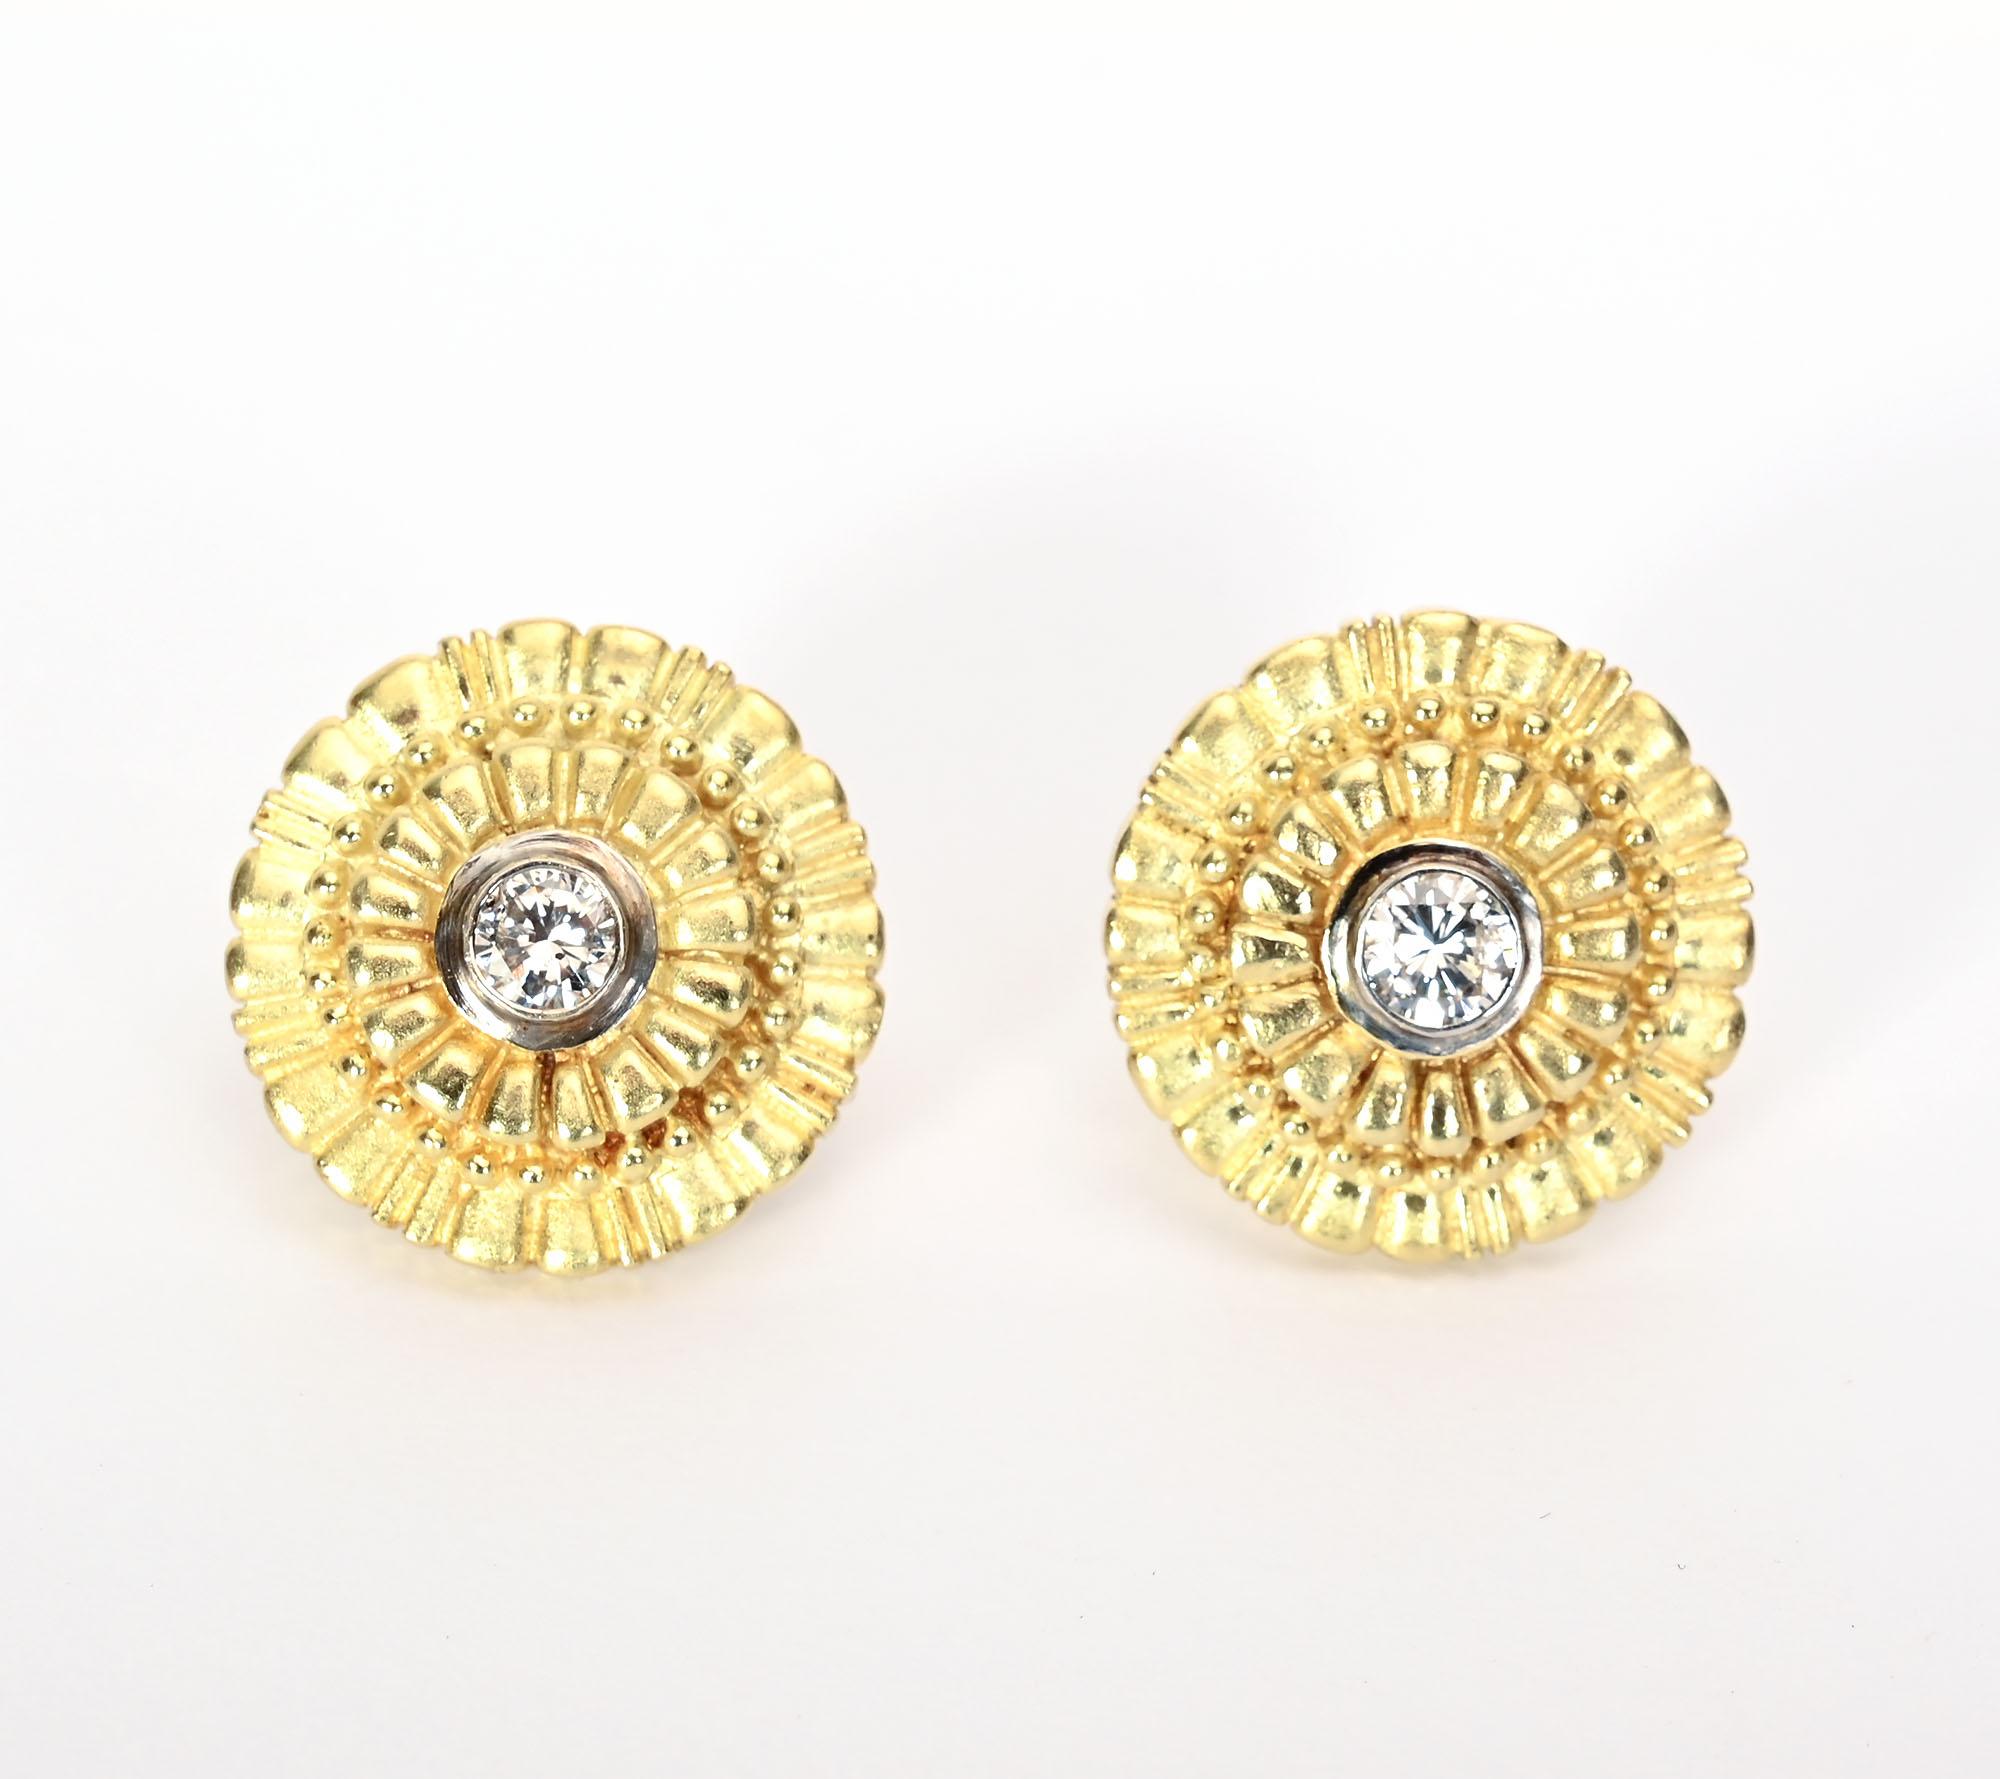 Ces boucles d'oreilles rondes en or présentent un motif en escalier composé de rectangles, de barres et de boules. Ils rayonnent à partir du diamant central d'un demi-carat. 
Les dos sont des poteaux et des clips. La marque du fabricant n'est pas